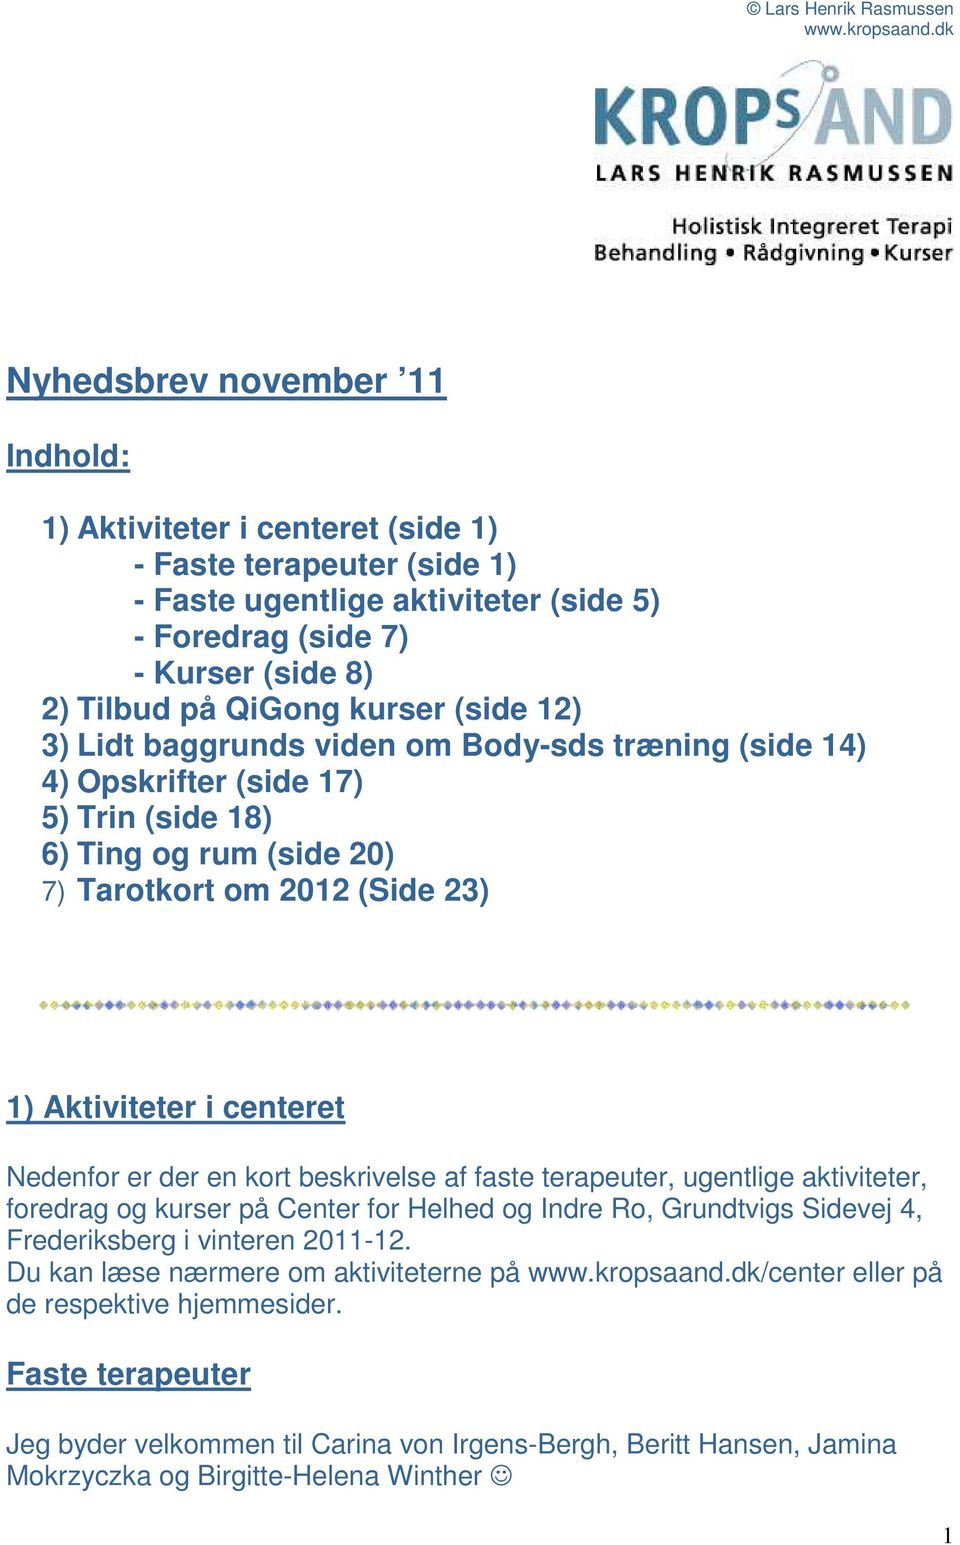 Nedenfor er der en kort beskrivelse af faste terapeuter, ugentlige aktiviteter, foredrag og kurser på Center for Helhed og Indre Ro, Grundtvigs Sidevej 4, Frederiksberg i vinteren 2011-12.